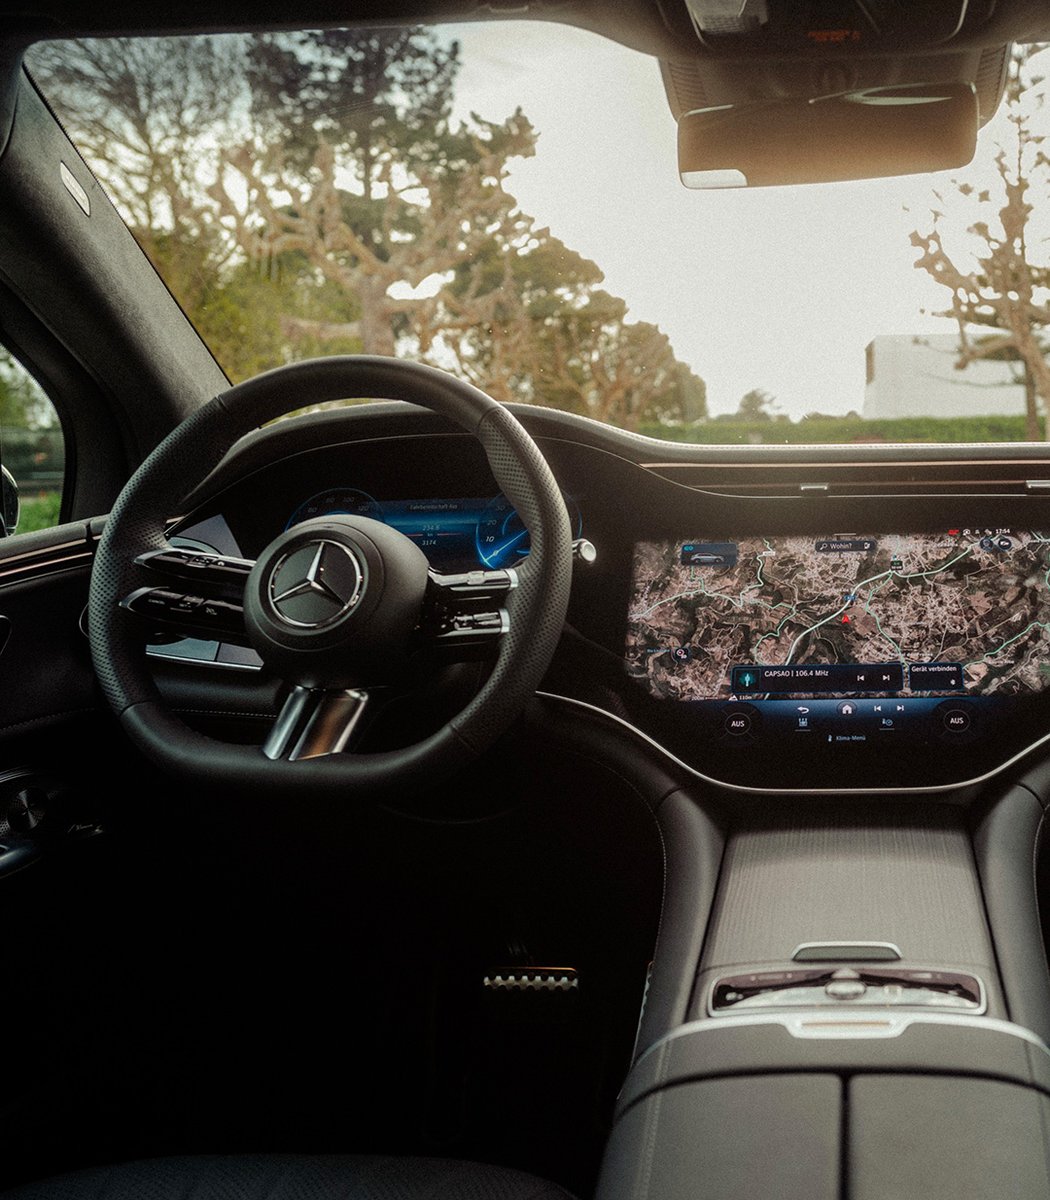 Der Mercedes-Benz EQE SUV setzt eure Abenteuerlust frei. Er vereint luxuriösen Komfort mit robusten Eigenschaften und macht jeden Moment im Freien zu einem außergewöhnlichen Erlebnis aus Stil und Performance.

Mehr:
👉 mb4.me/EQE_SUV_de_tw

#MercedesBenz #EQESUV #fullelectric